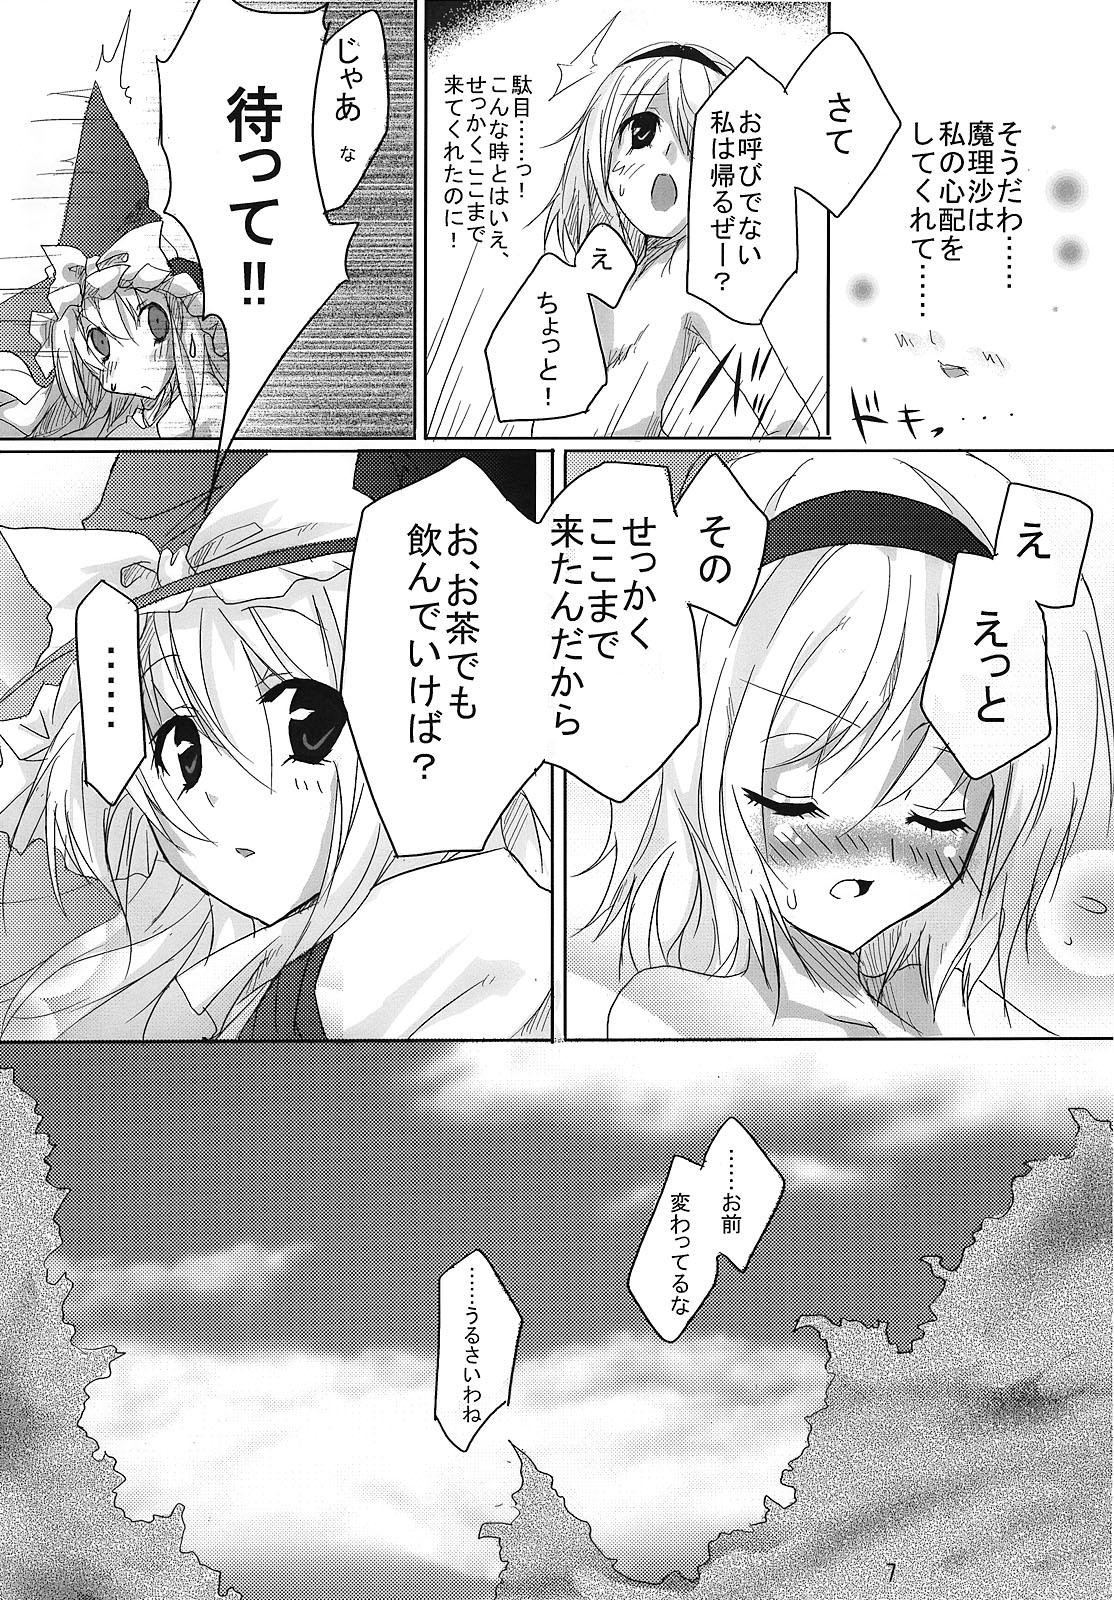 Longhair RAN × Yukari AND Alice × Marisa - Touhou project Shy - Page 6